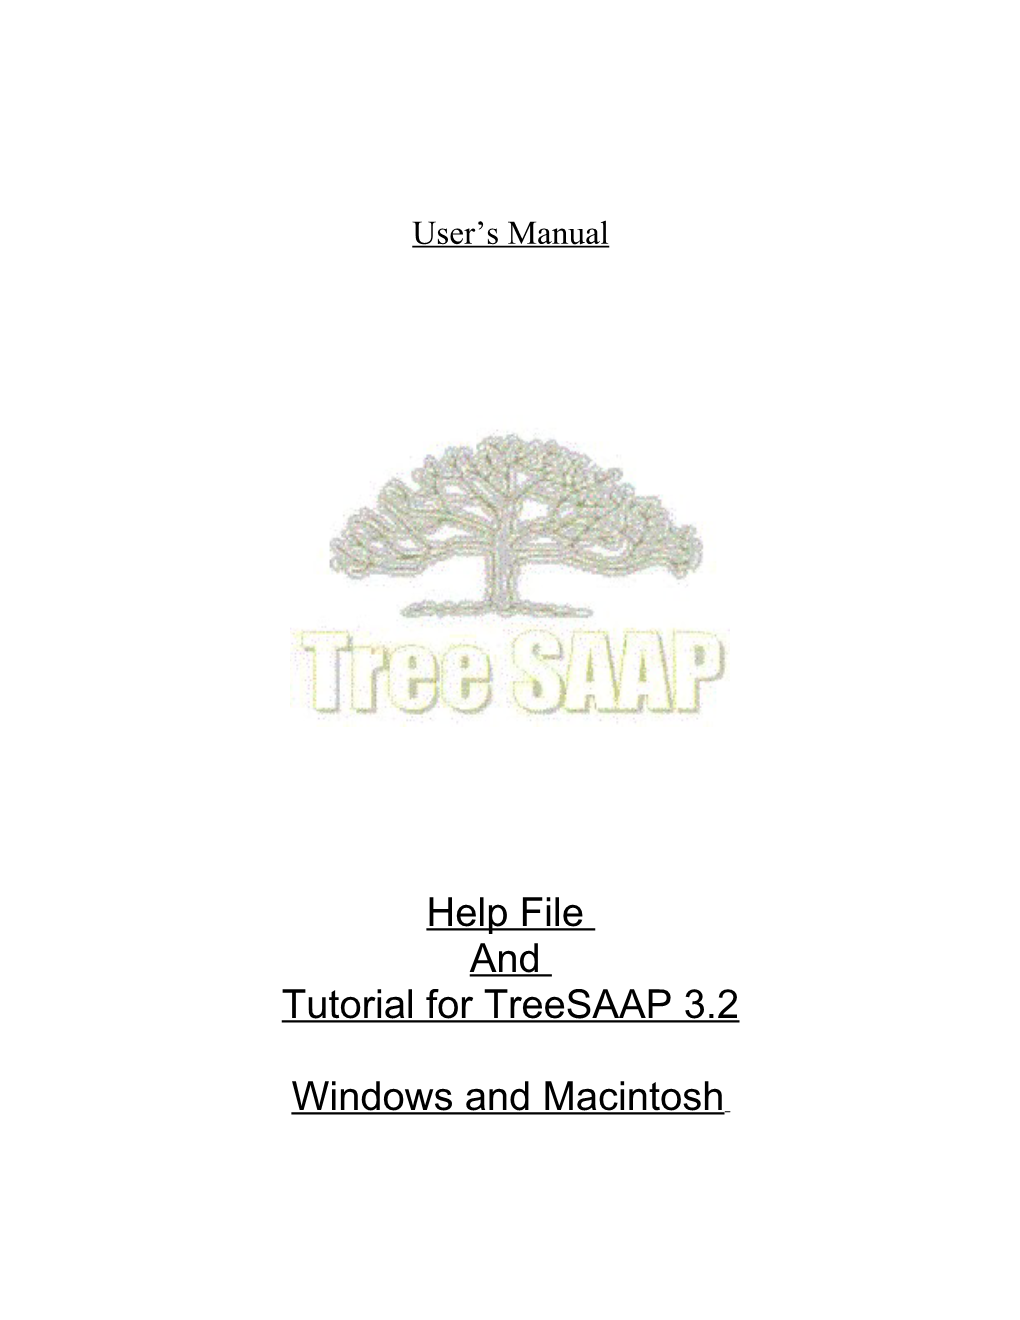 Tutorial for Treesaap 3.2